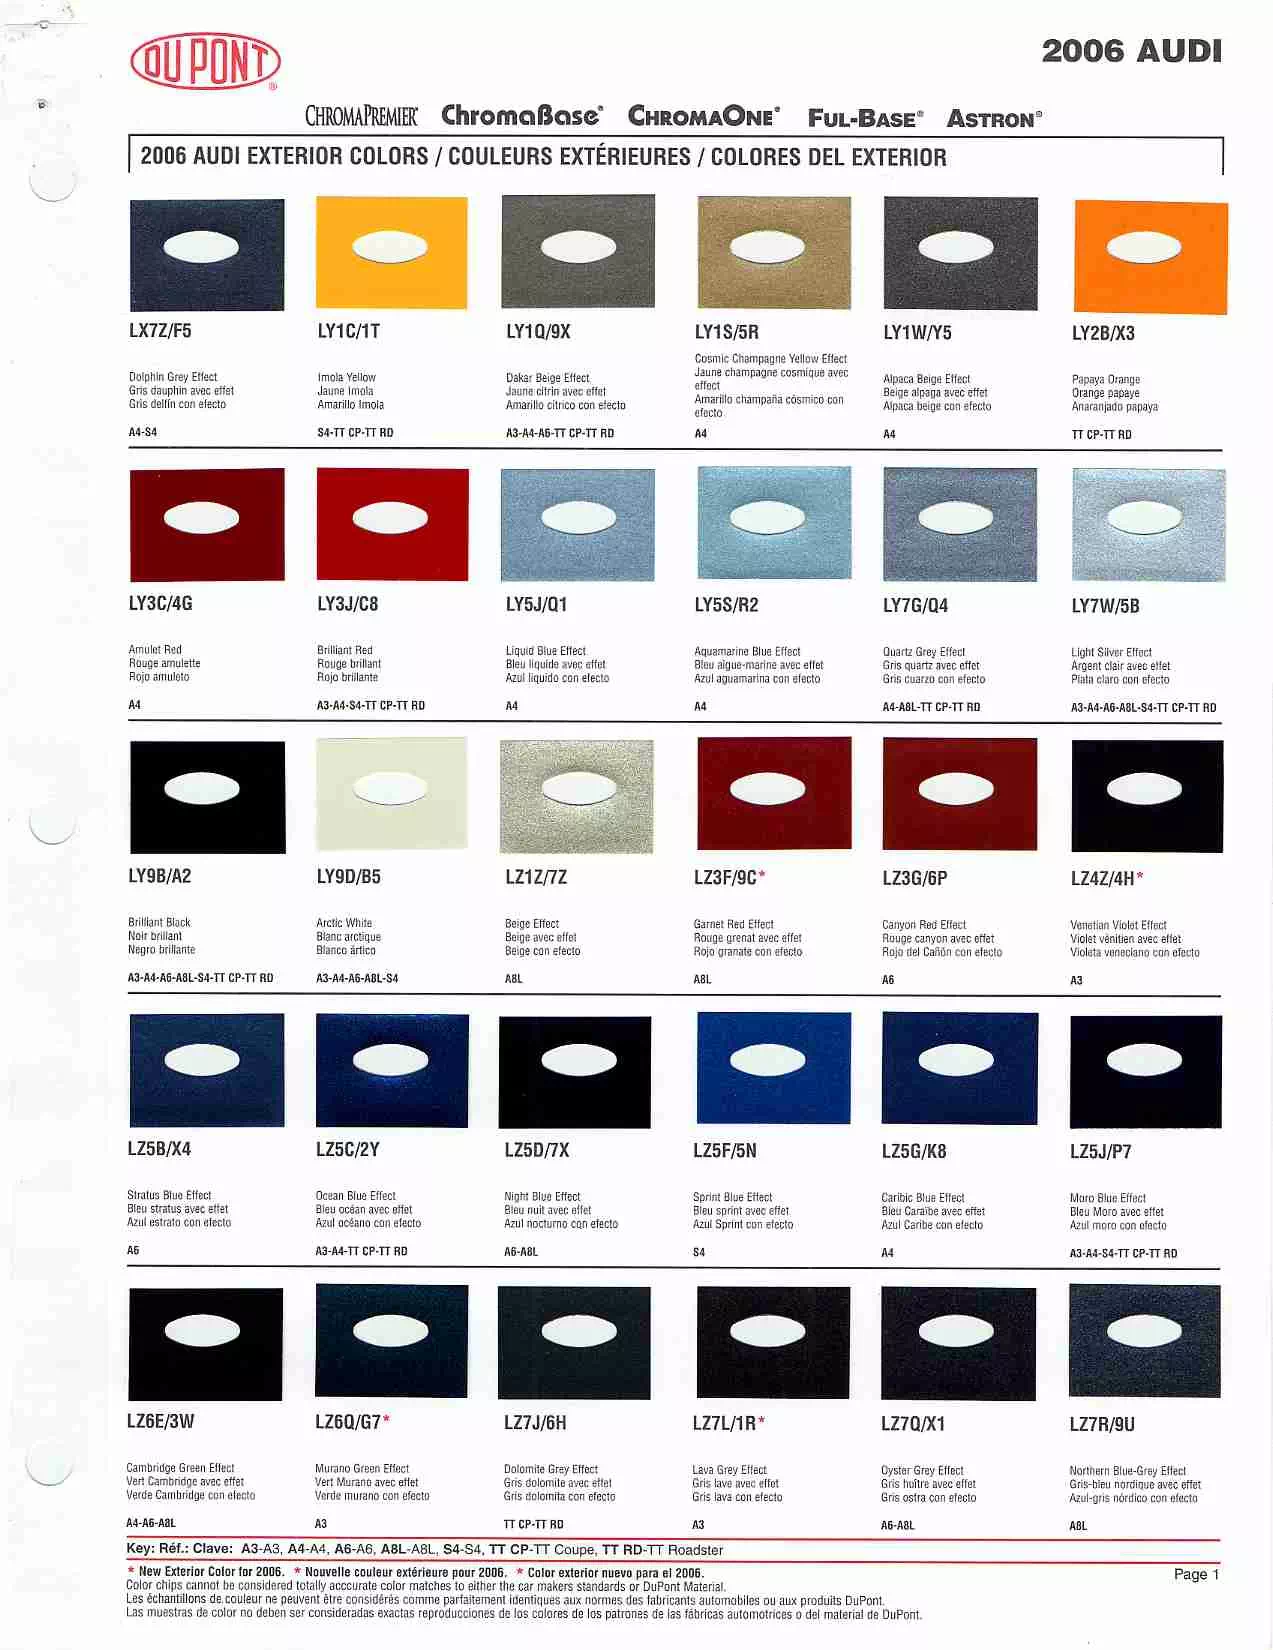 Audi Paint Codes And Color Charts - Audi A3 Paint Colour Code